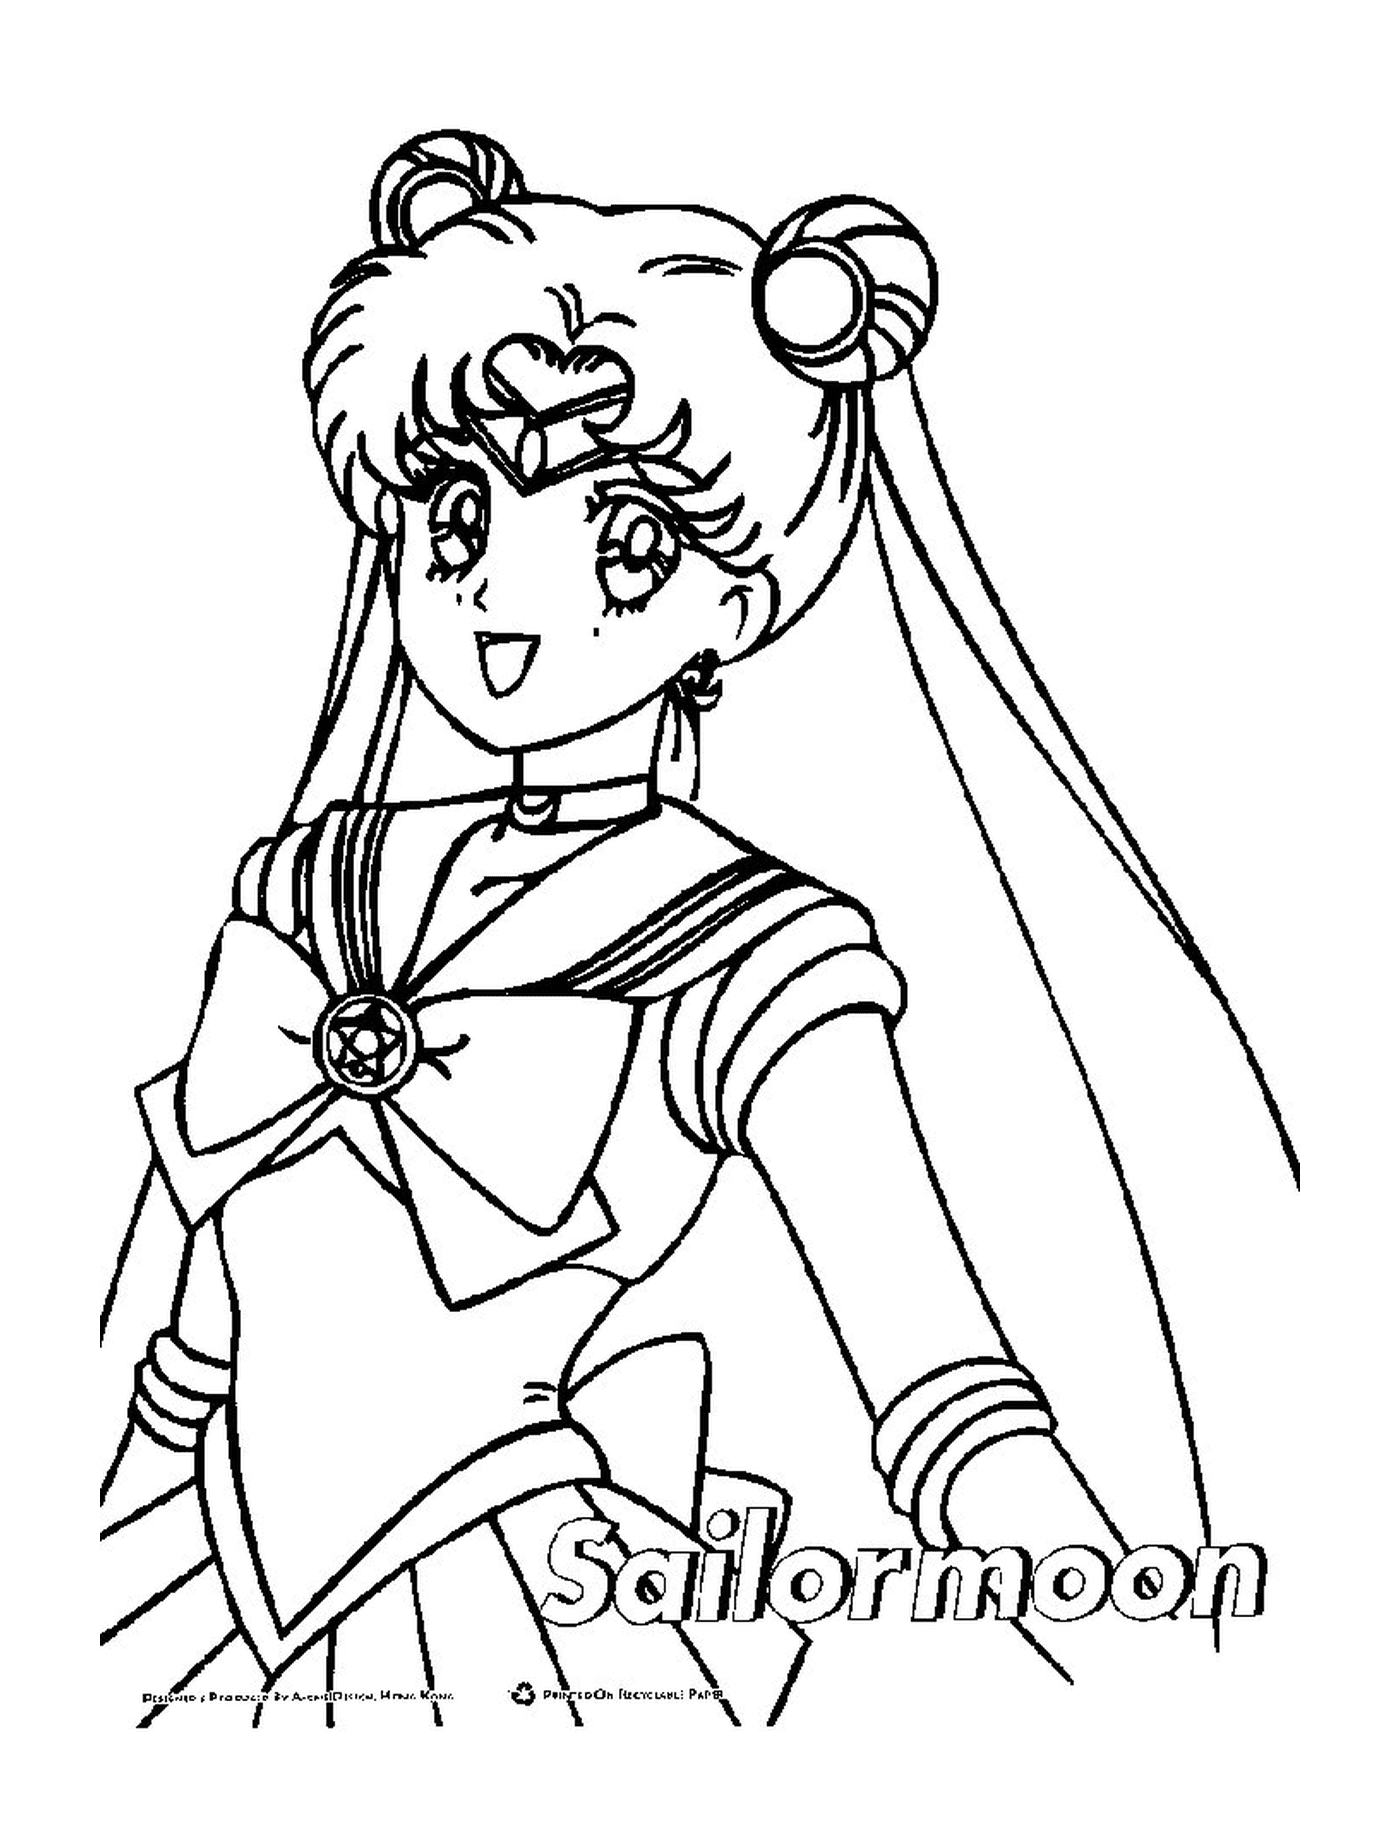  Ein Charakter von Sailor Moon 